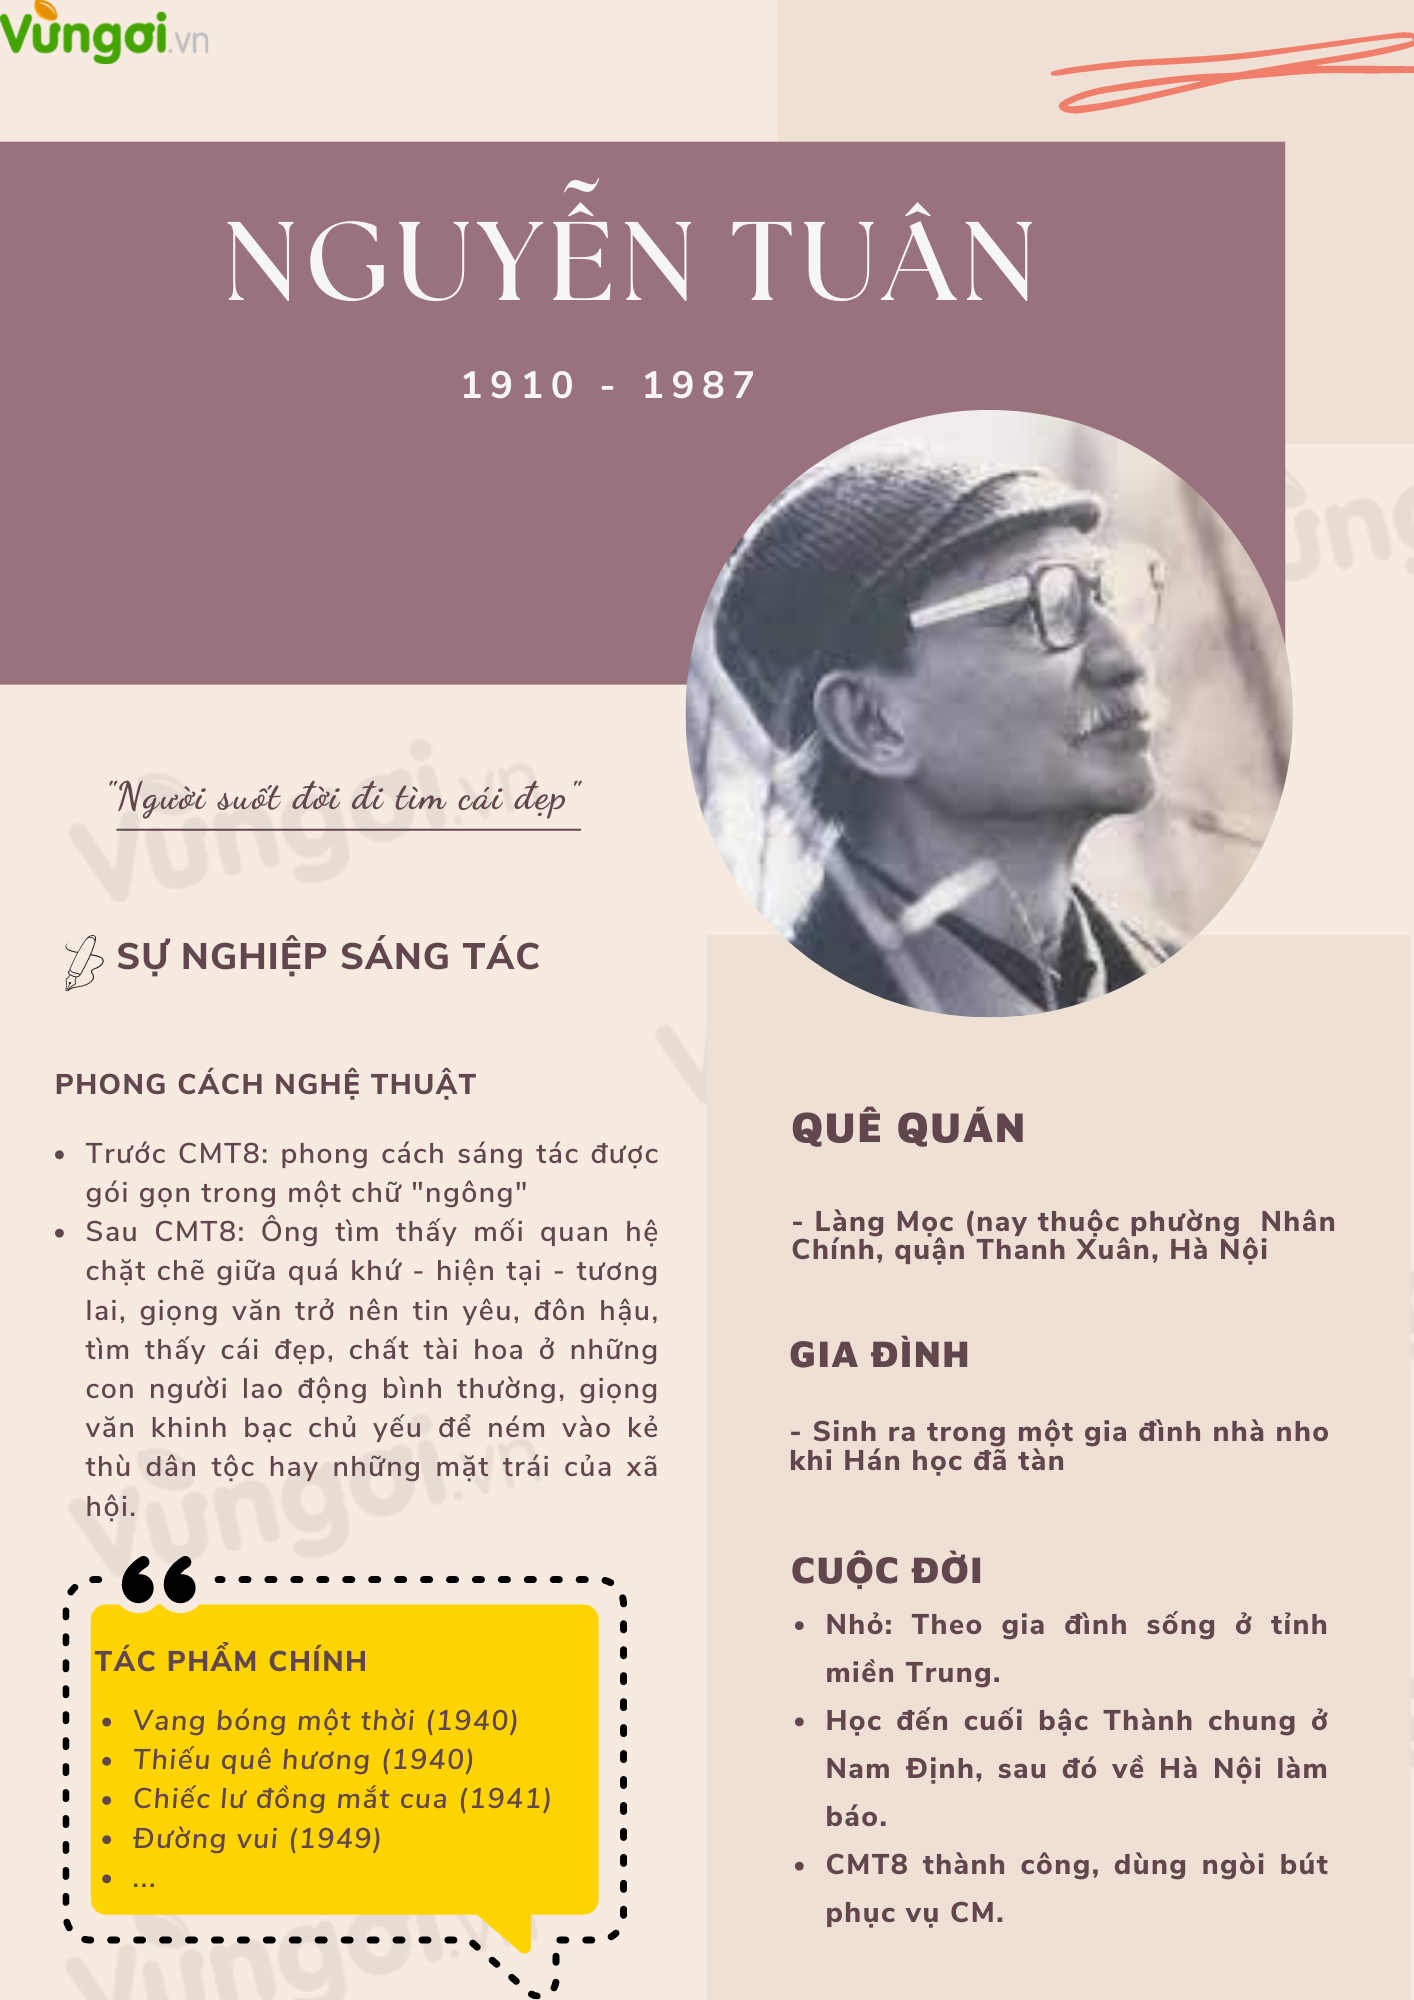 Vài nét về tác giả Nguyễn Tuân - ảnh 1